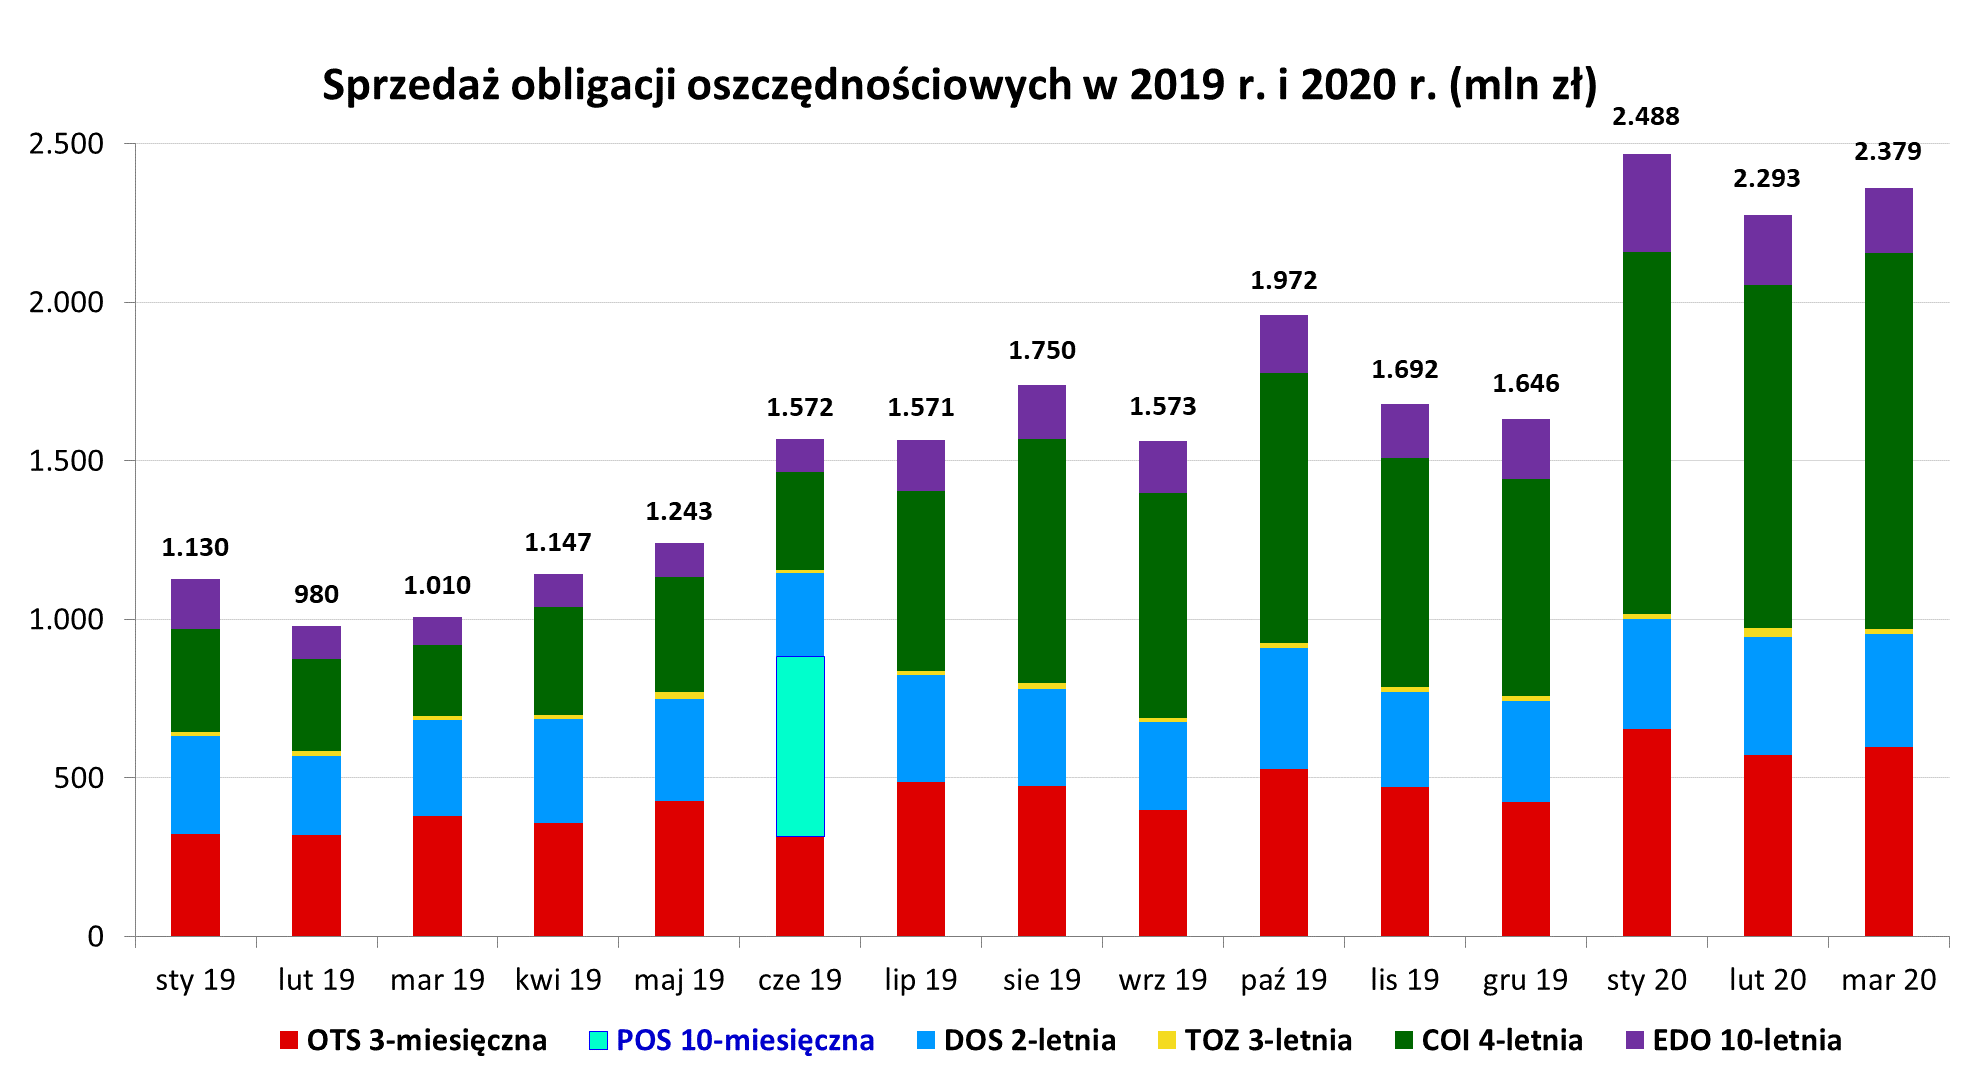 Wykres przedstawiający sprzedaż obligacji oszczędnościowych w 2019 i 2020 r. (mln zł)